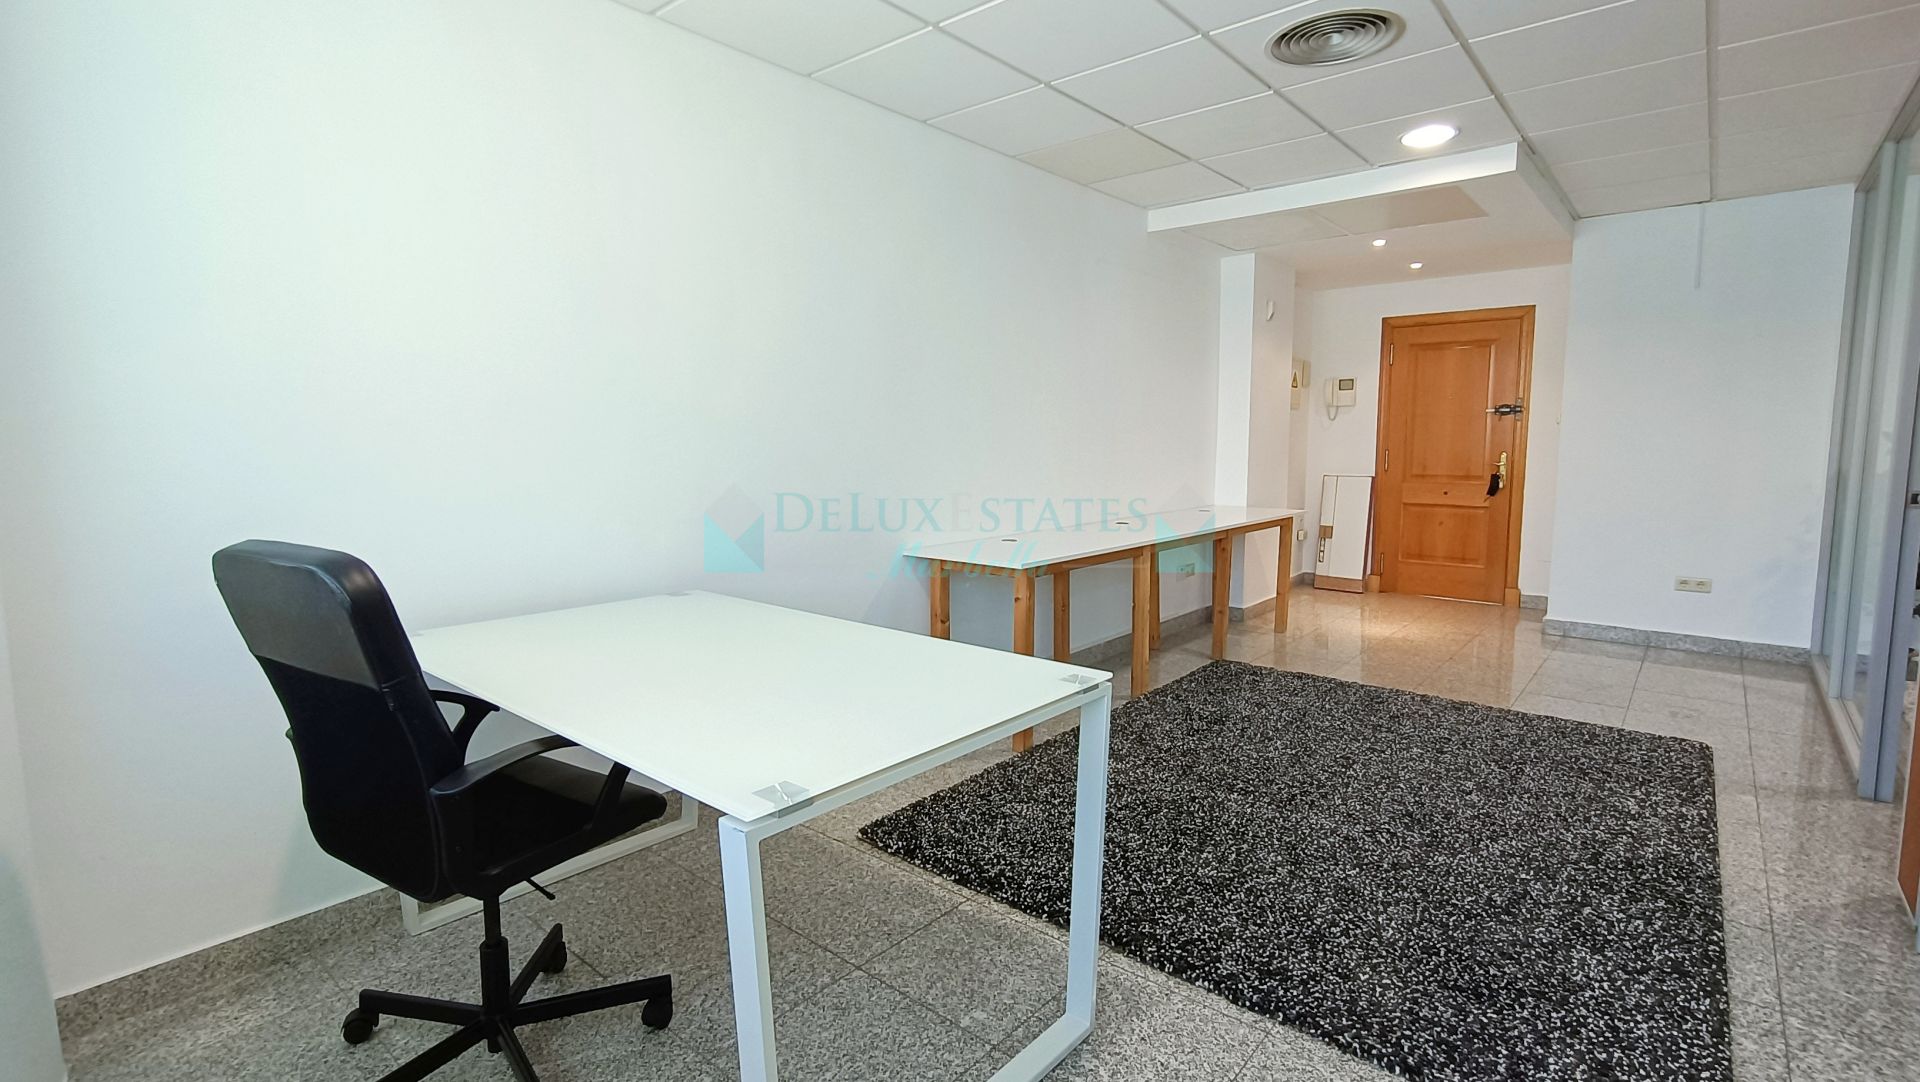 Office for sale in Tembo Banus, Marbella - Puerto Banus